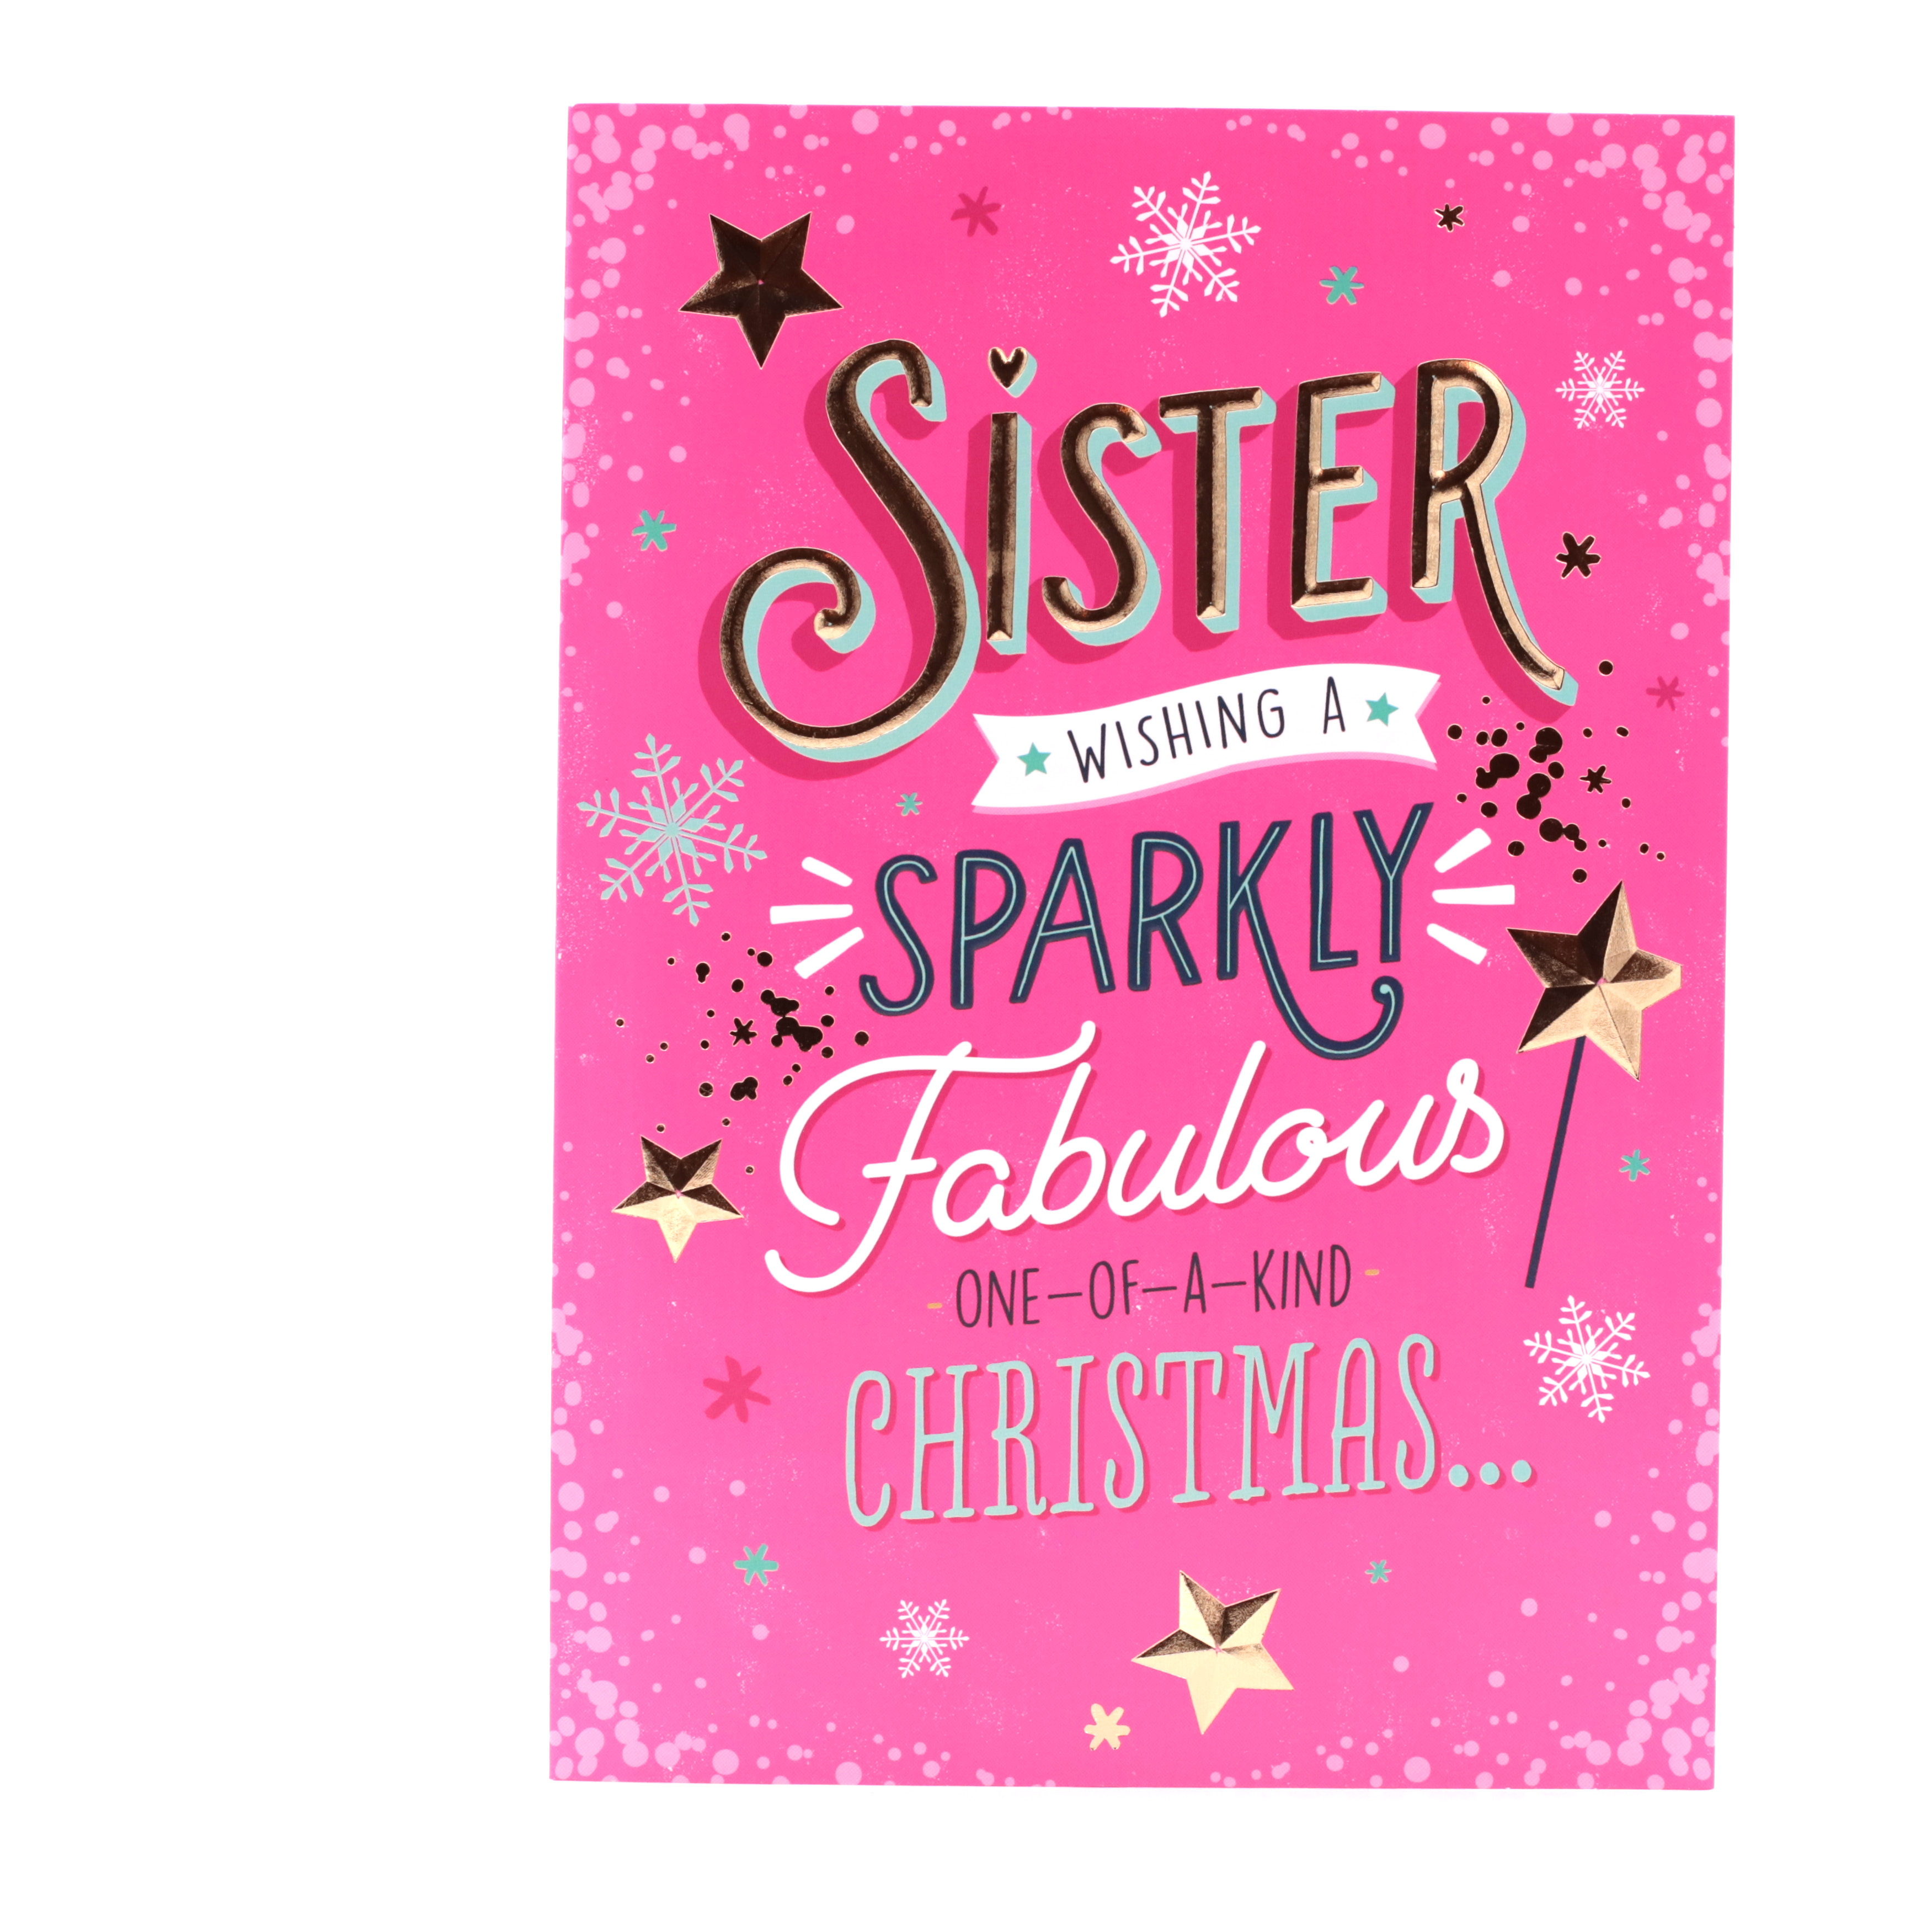 Christmas Card - Sister, Sparkly And Fabulous Christmas